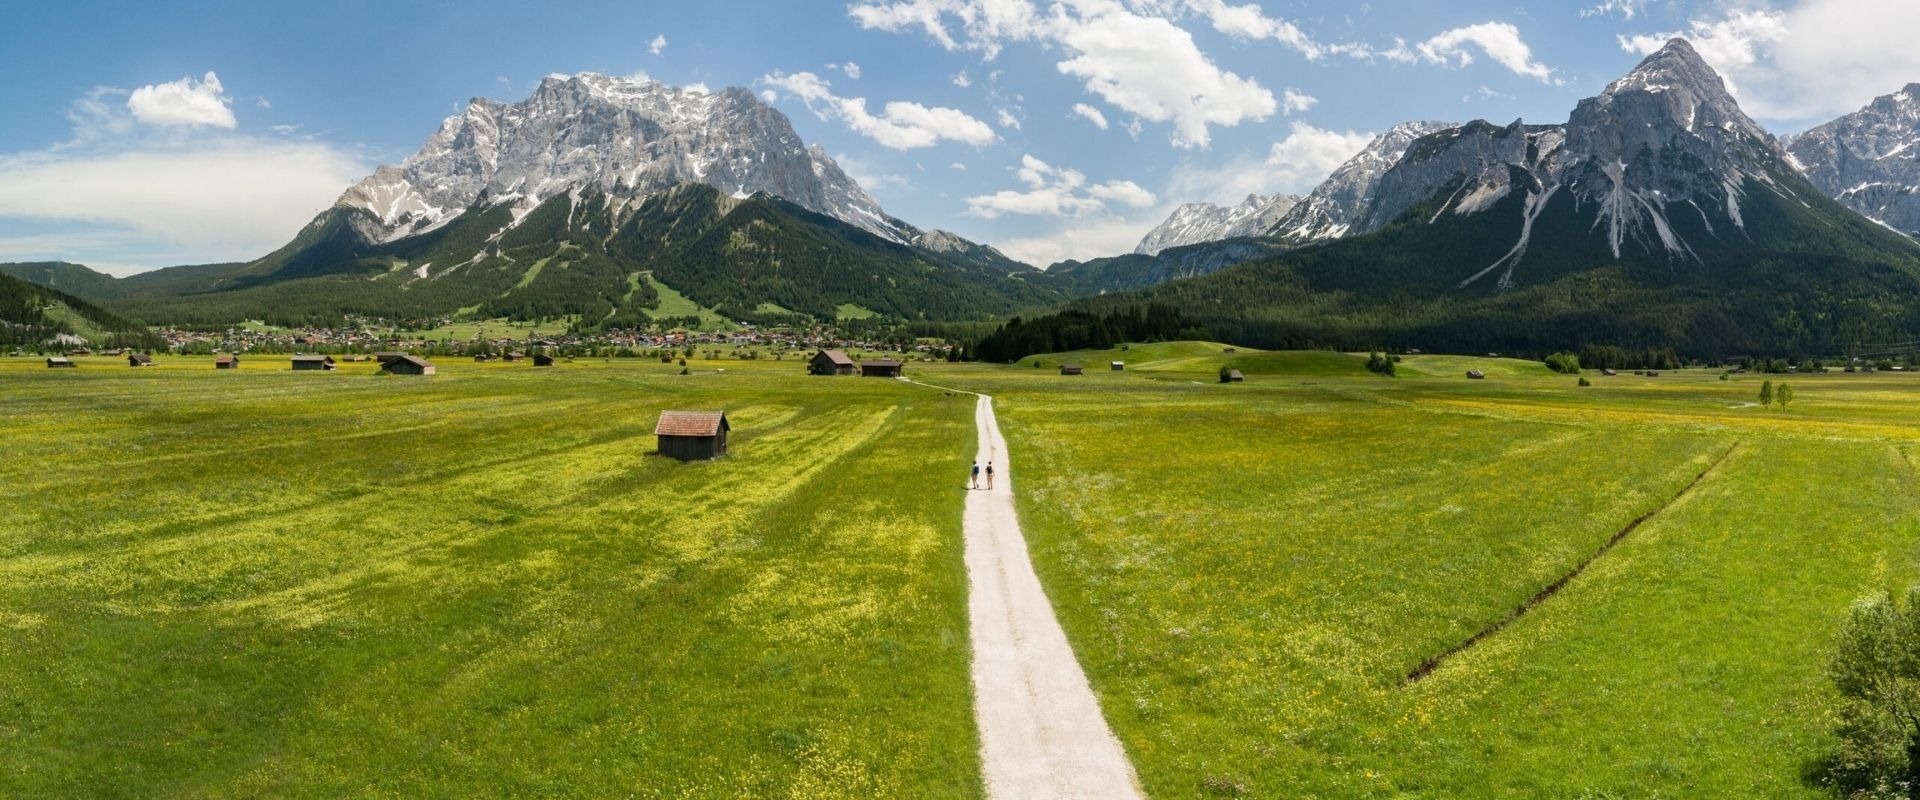 Eenvoudig? Of liever luxe kamperen in de Oostenrijkse Alpen?